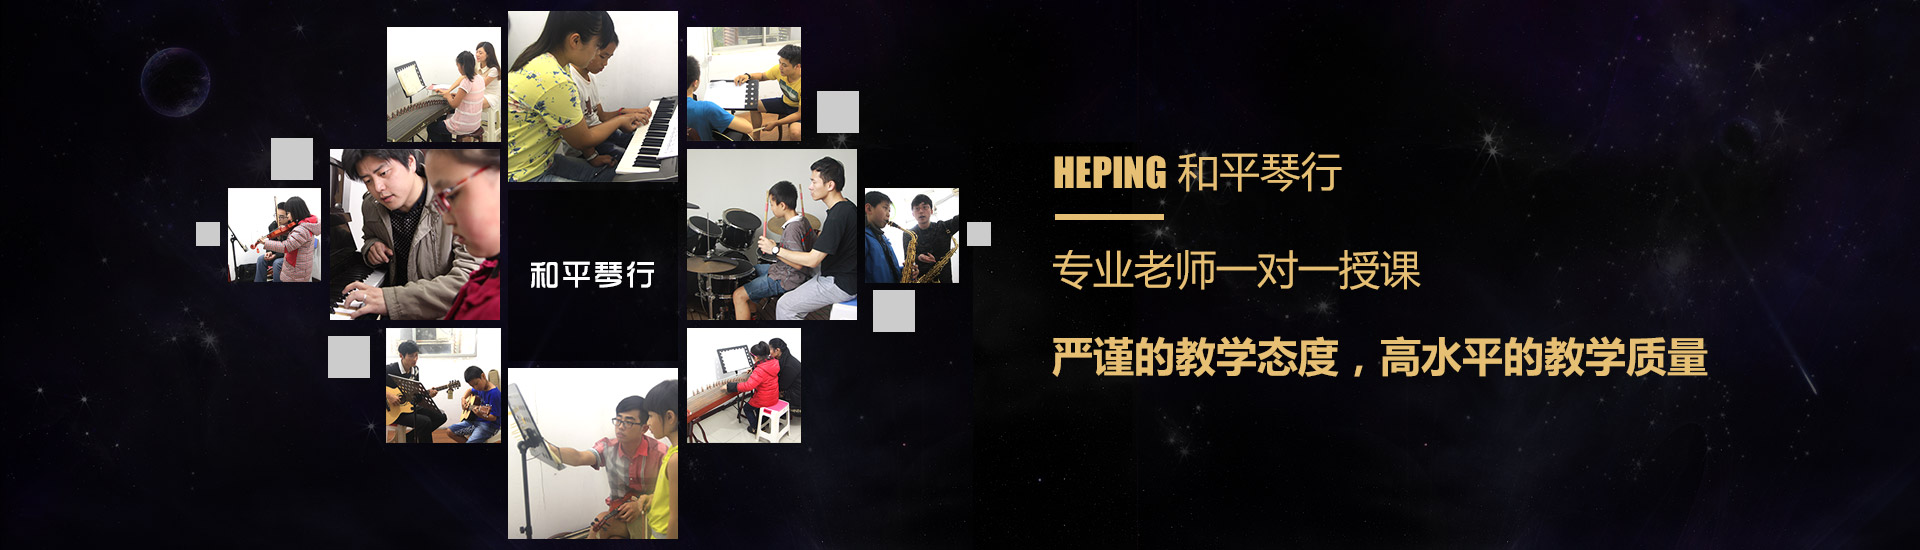 扬州钢琴培训宣传图片